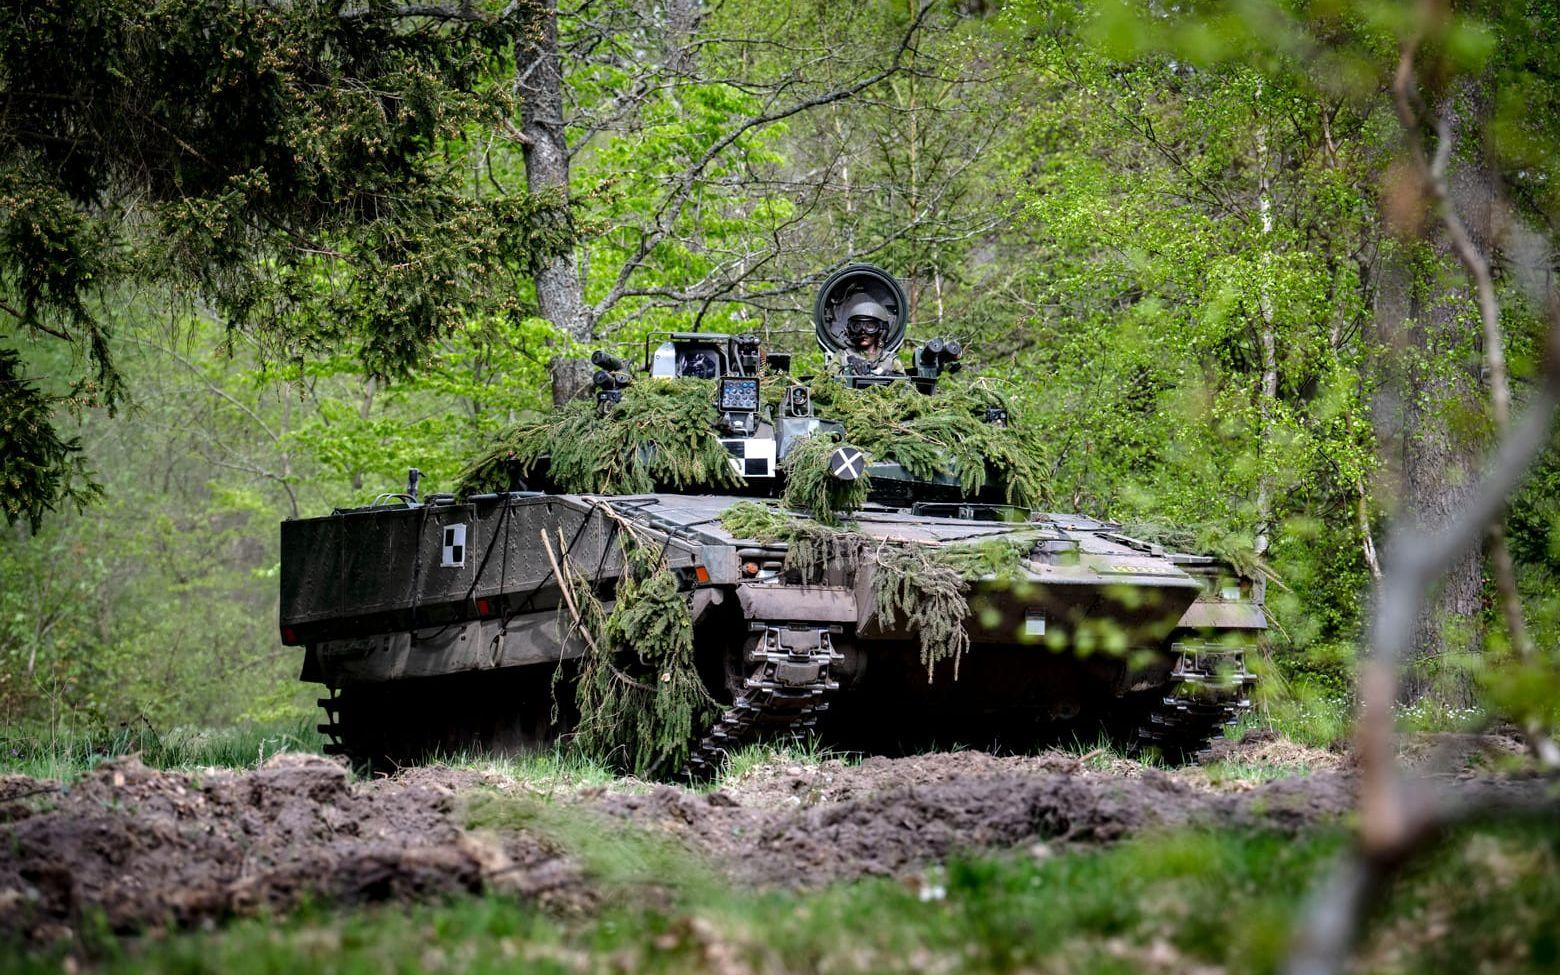 Stridsfordon 90. Ett av fordonen Sverige nu utlovar till Ukraina. Och i Europa ökar nu trycket på Tyskland att skicka stridsvagnar till landet. Flera tabun försvinner nu och riskerar att dra in Nato i kriget, skriver GP:s Jan Höglund.